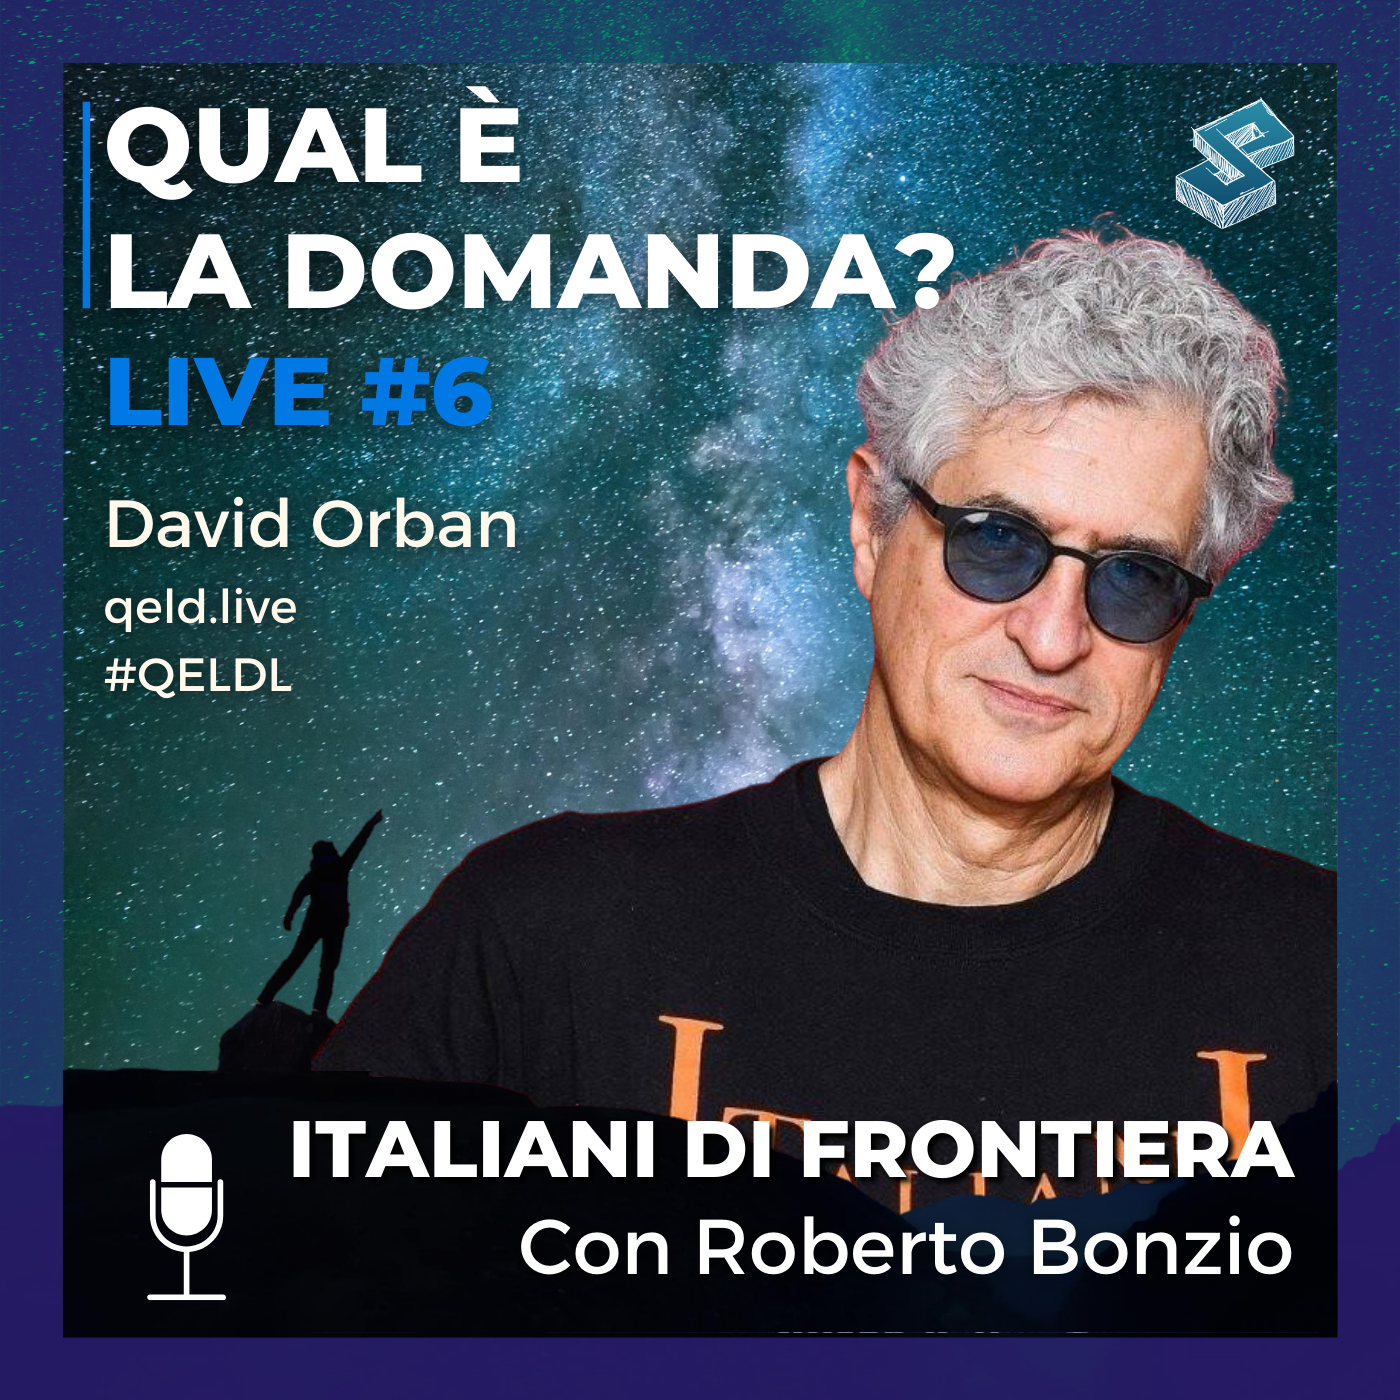 Italiani di frontiera Con Roberto Bonzio - QELDL #6